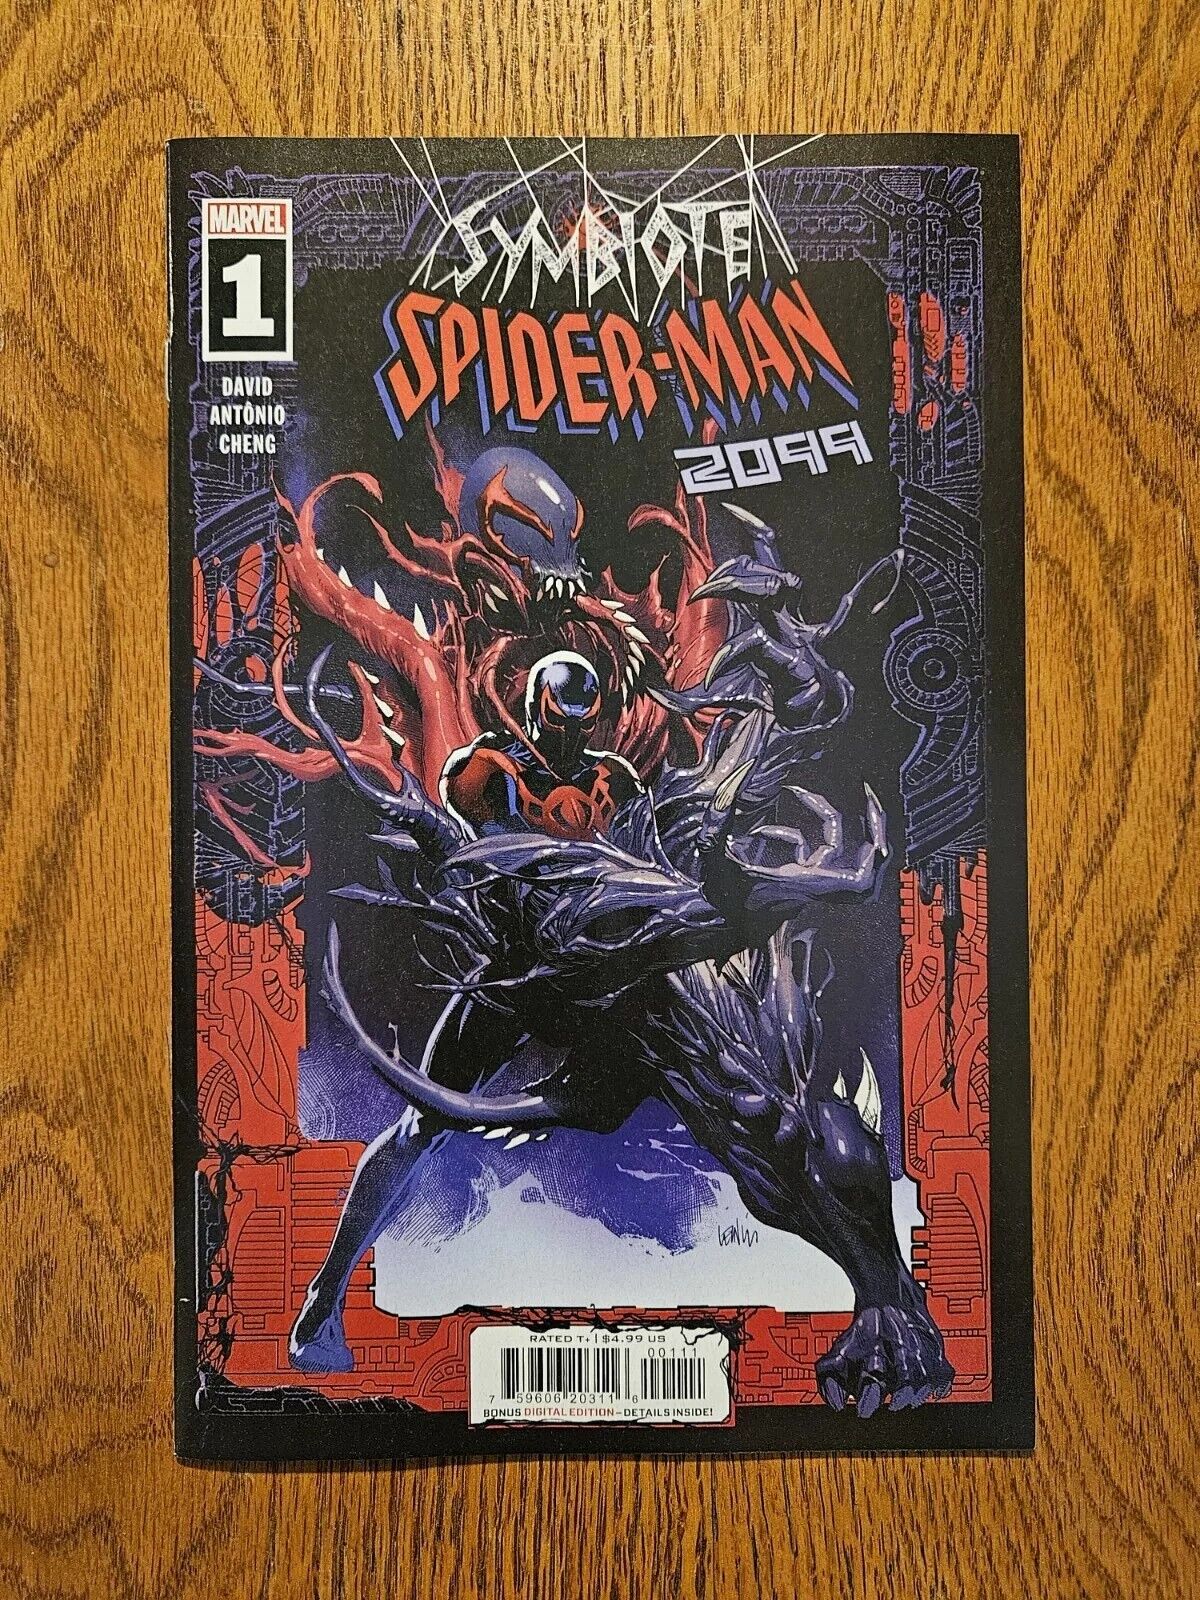 Symbiote Spider-Man 2099 #1 (Marvel, 2024)